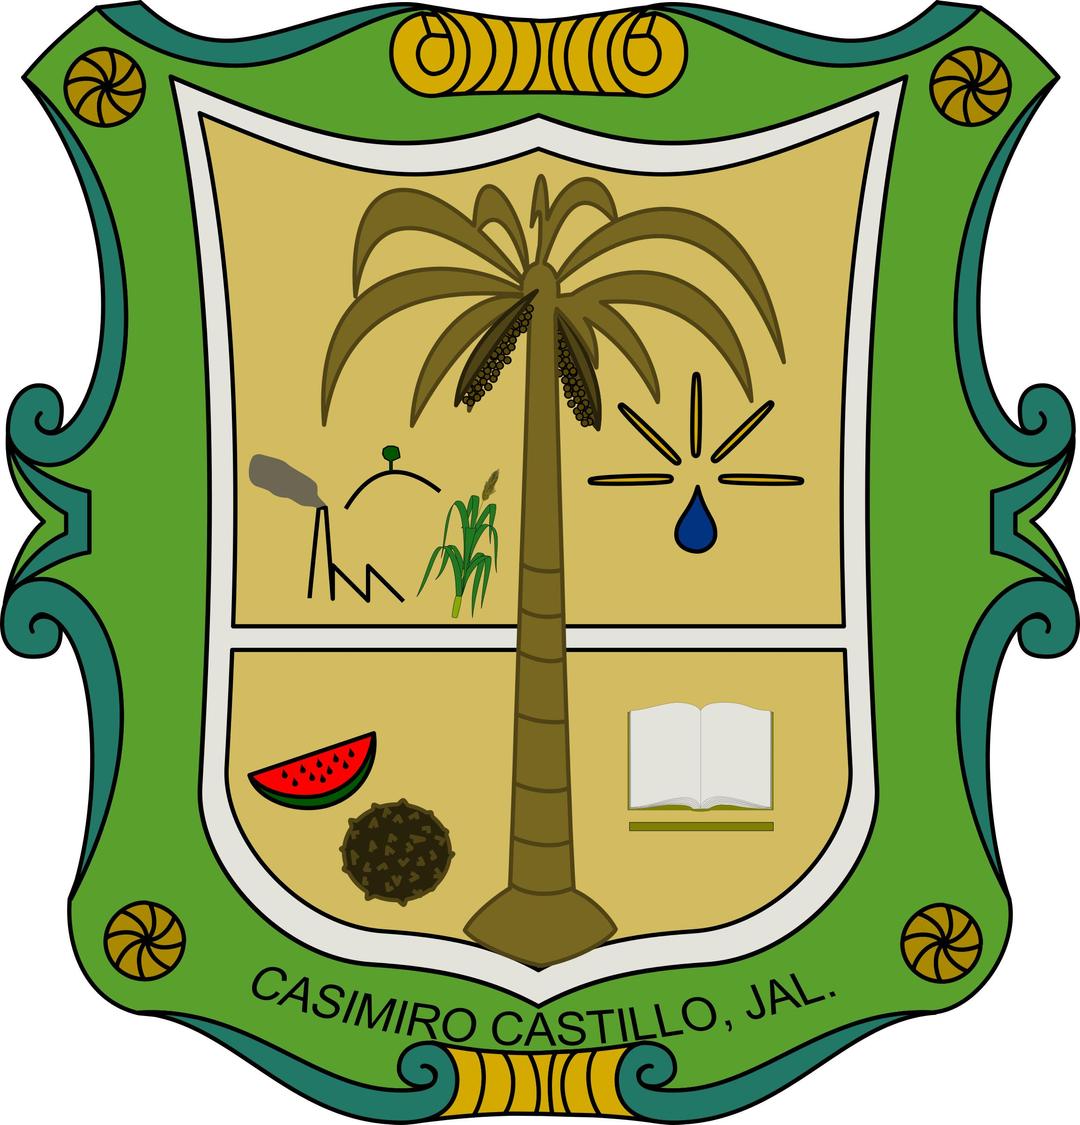 Escudo de Casimiro Castillo png transparent